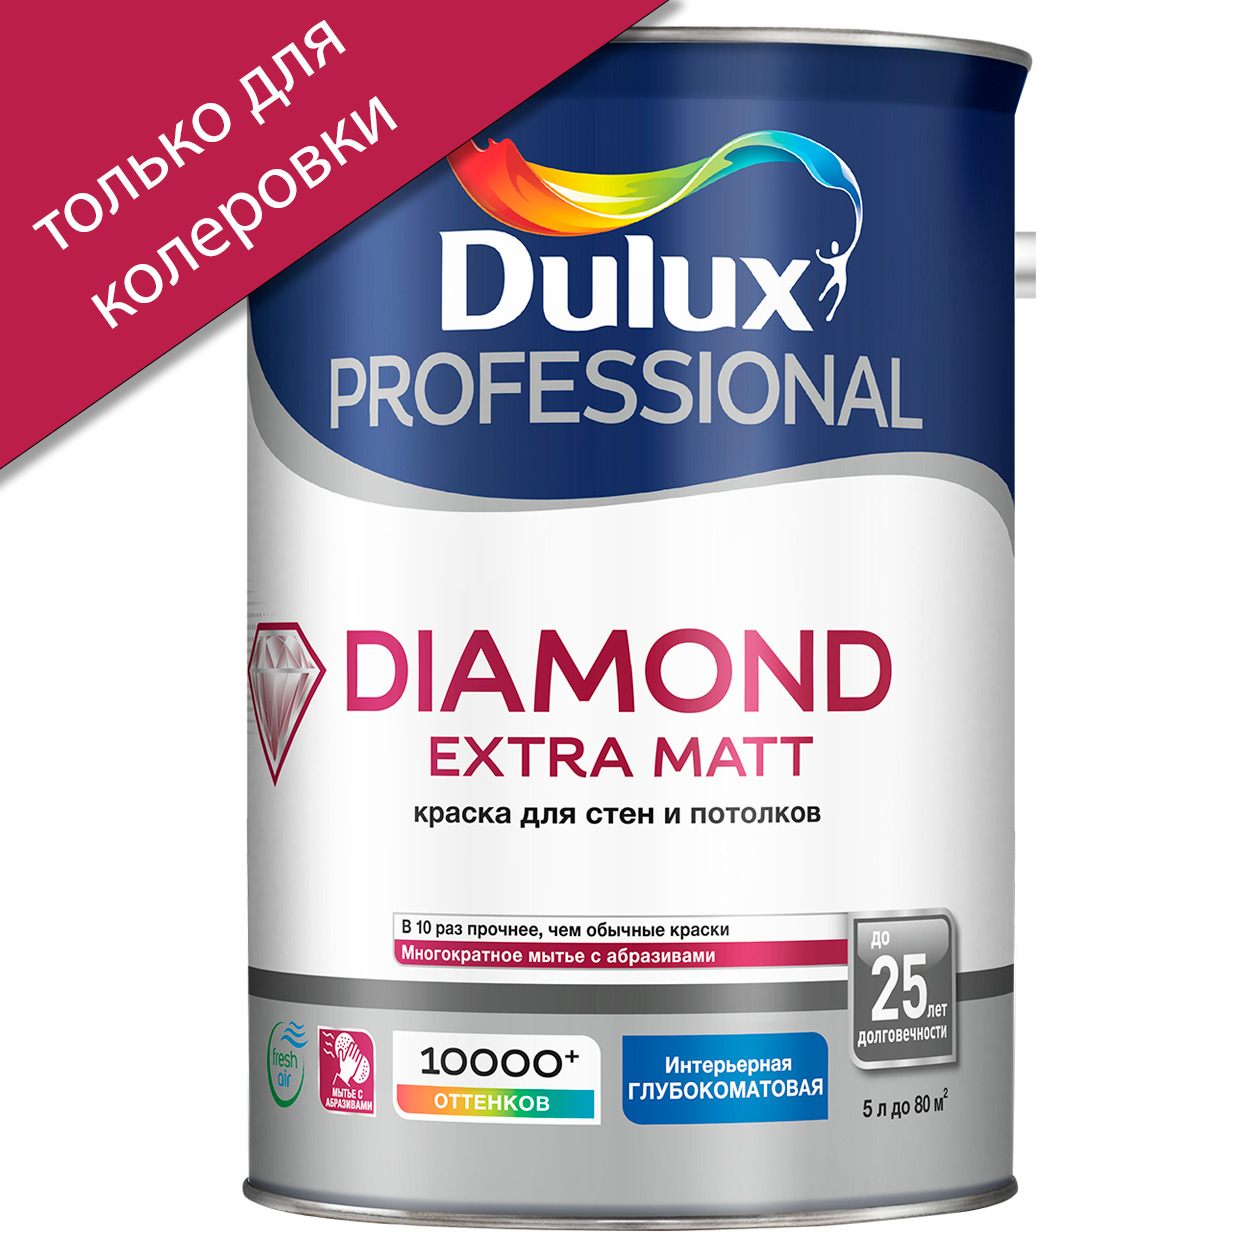 Dulux Diamond Extra Matt